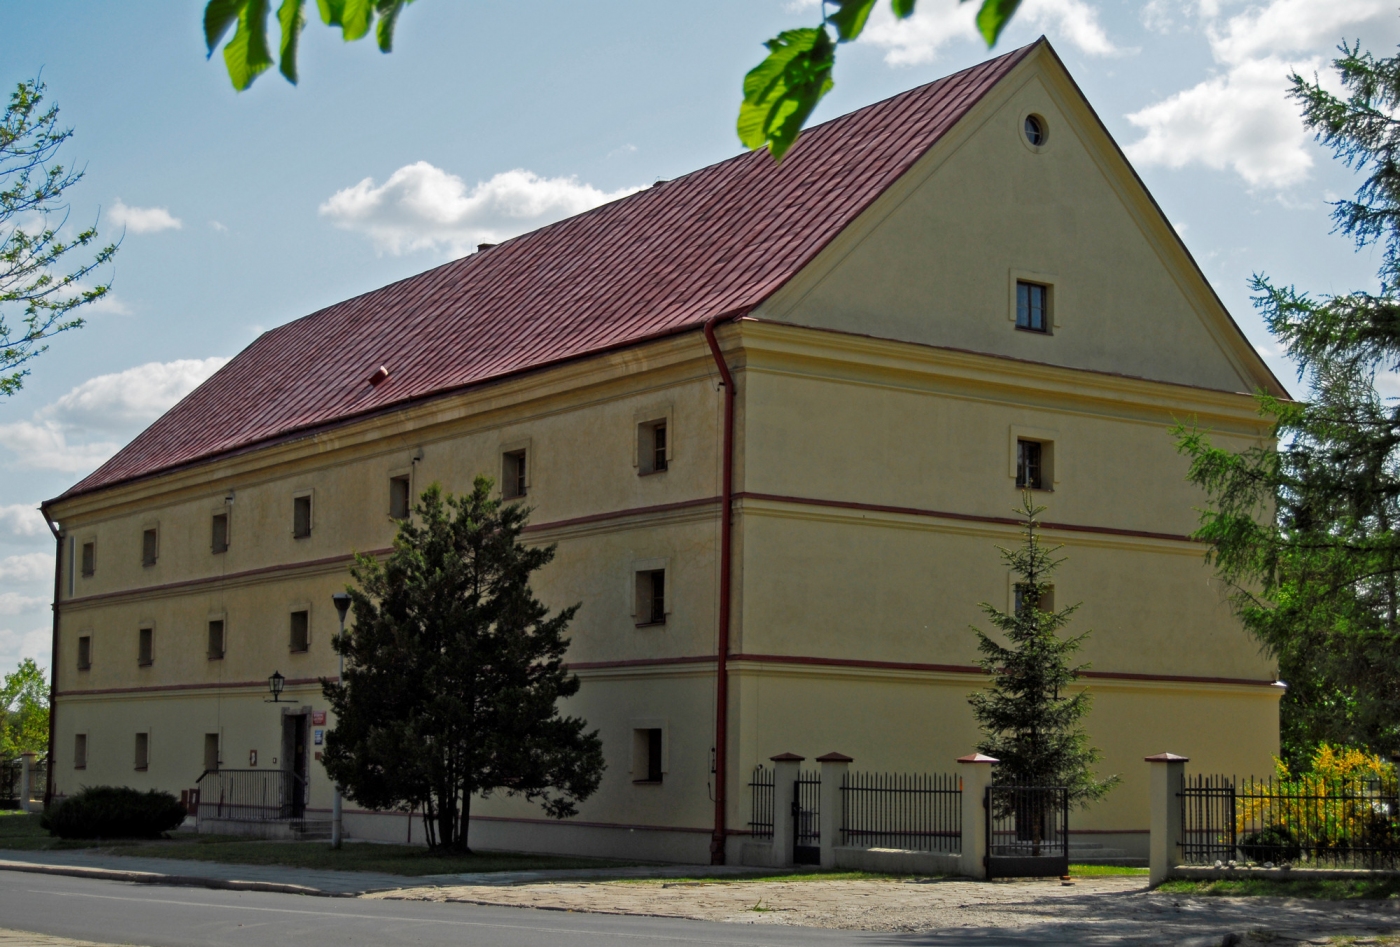 Siedziba Muzeum Kresów w Lubaczowie, budynek spichlerza z początku XIX wieku, fotografia A. Rychlewski, 2012 rok